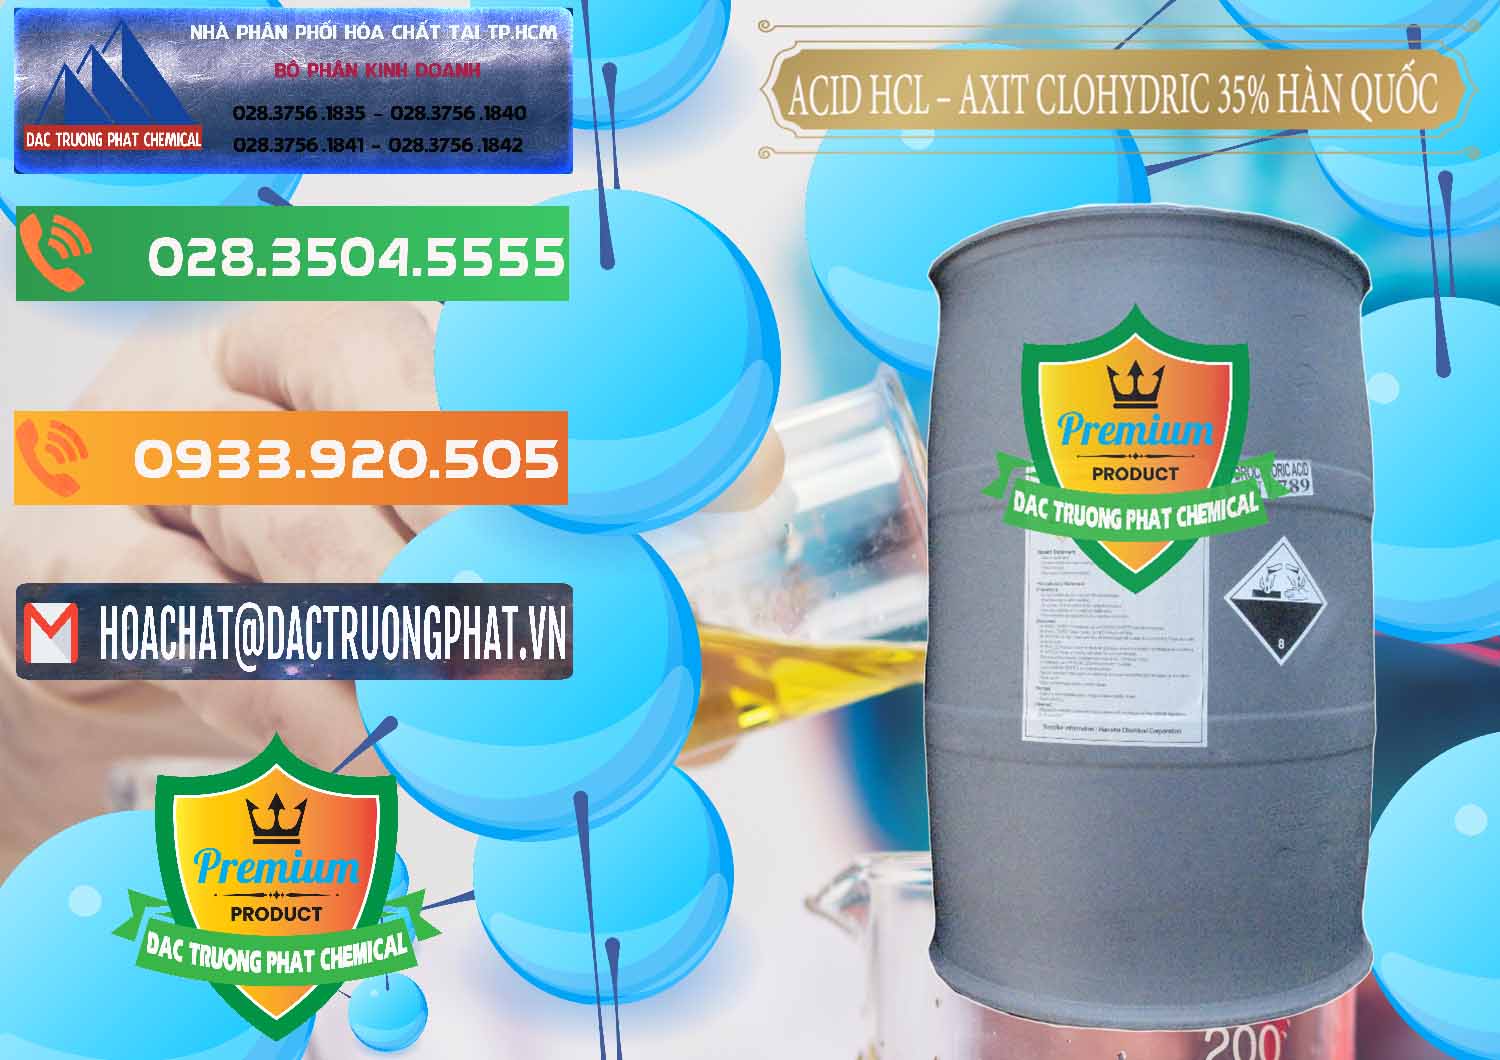 Nơi nhập khẩu _ bán Acid HCL - Axit Cohidric 35% Hàn Quốc Korea - 0011 - Chuyên cung cấp & kinh doanh hóa chất tại TP.HCM - hoachatxulynuoc.com.vn